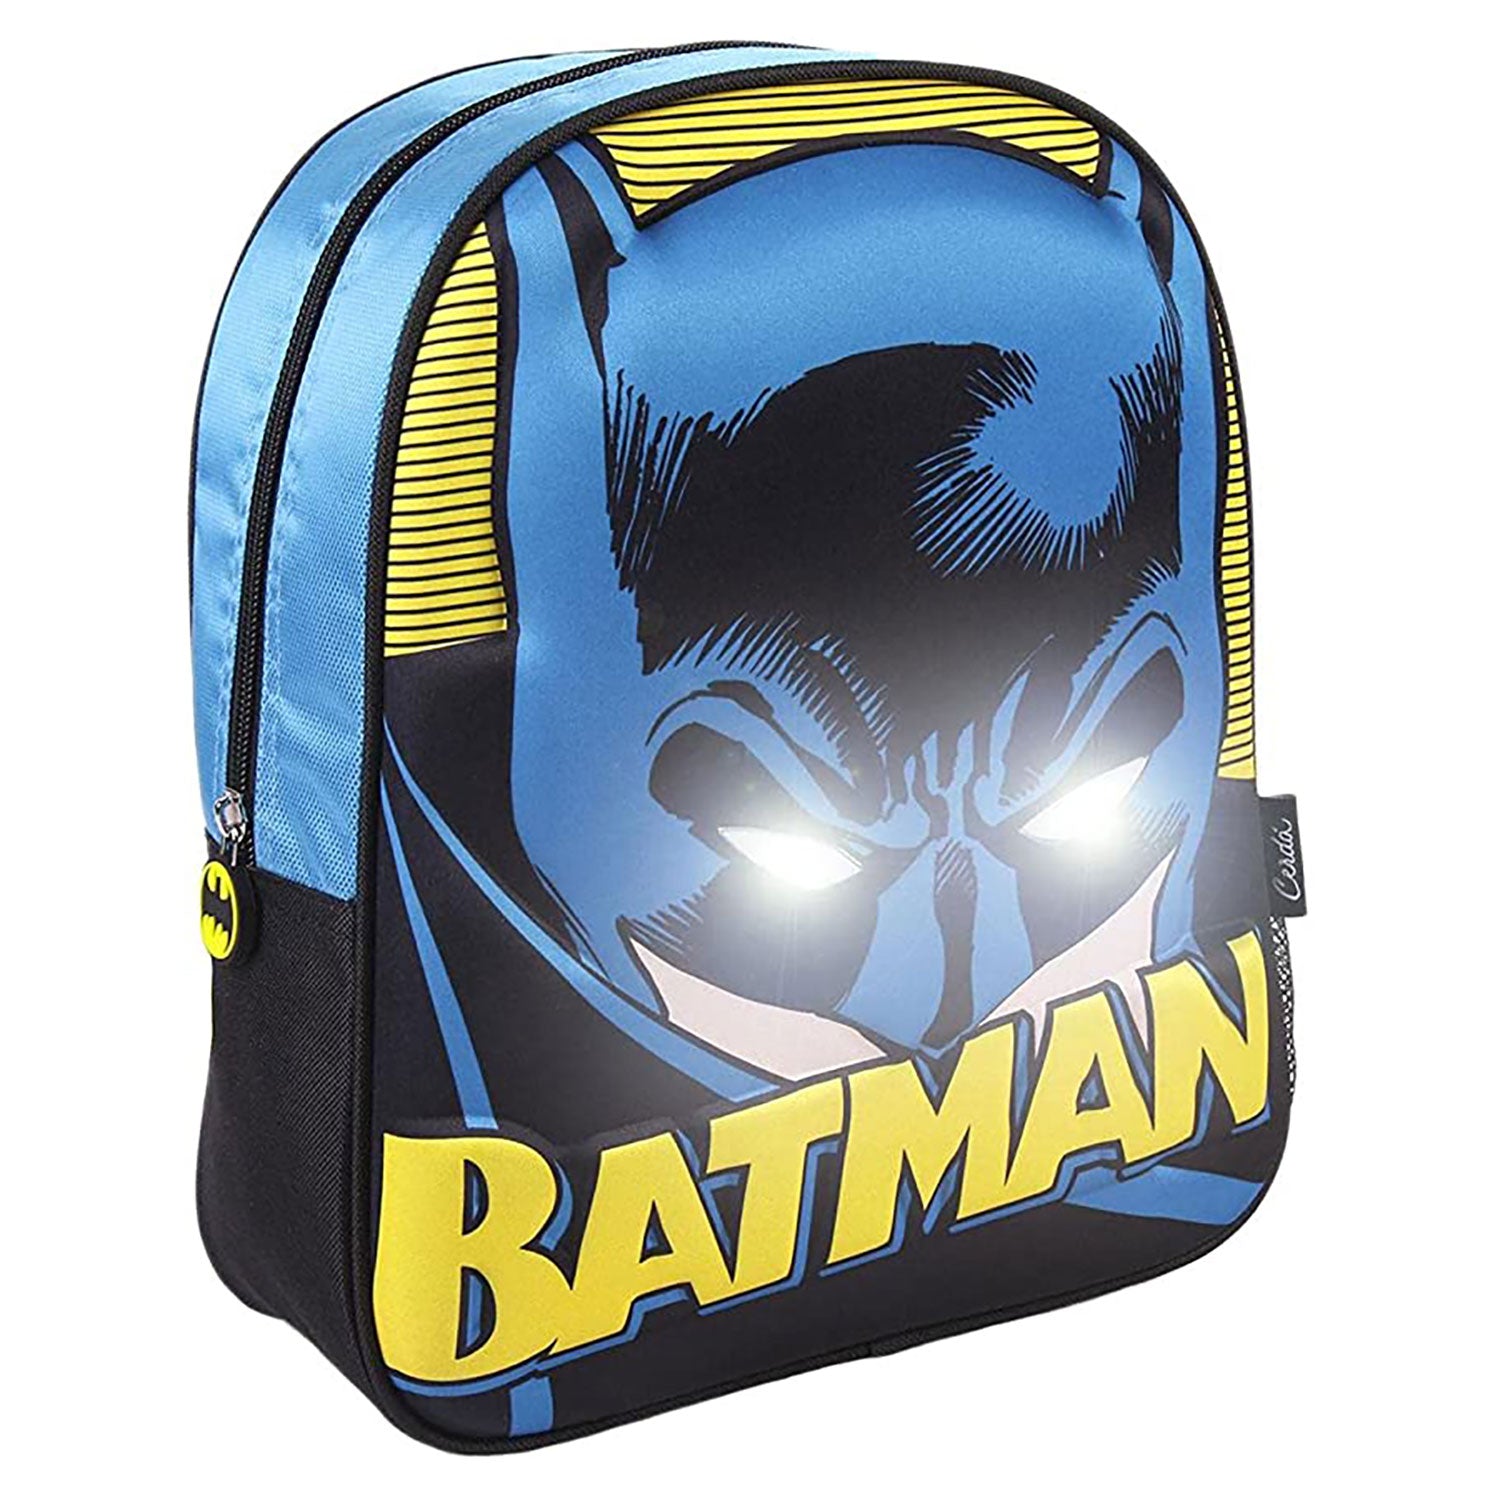 Zaino Batman DC Comics zainetto ufficiale con bretelle bambino scuola asilo 5540